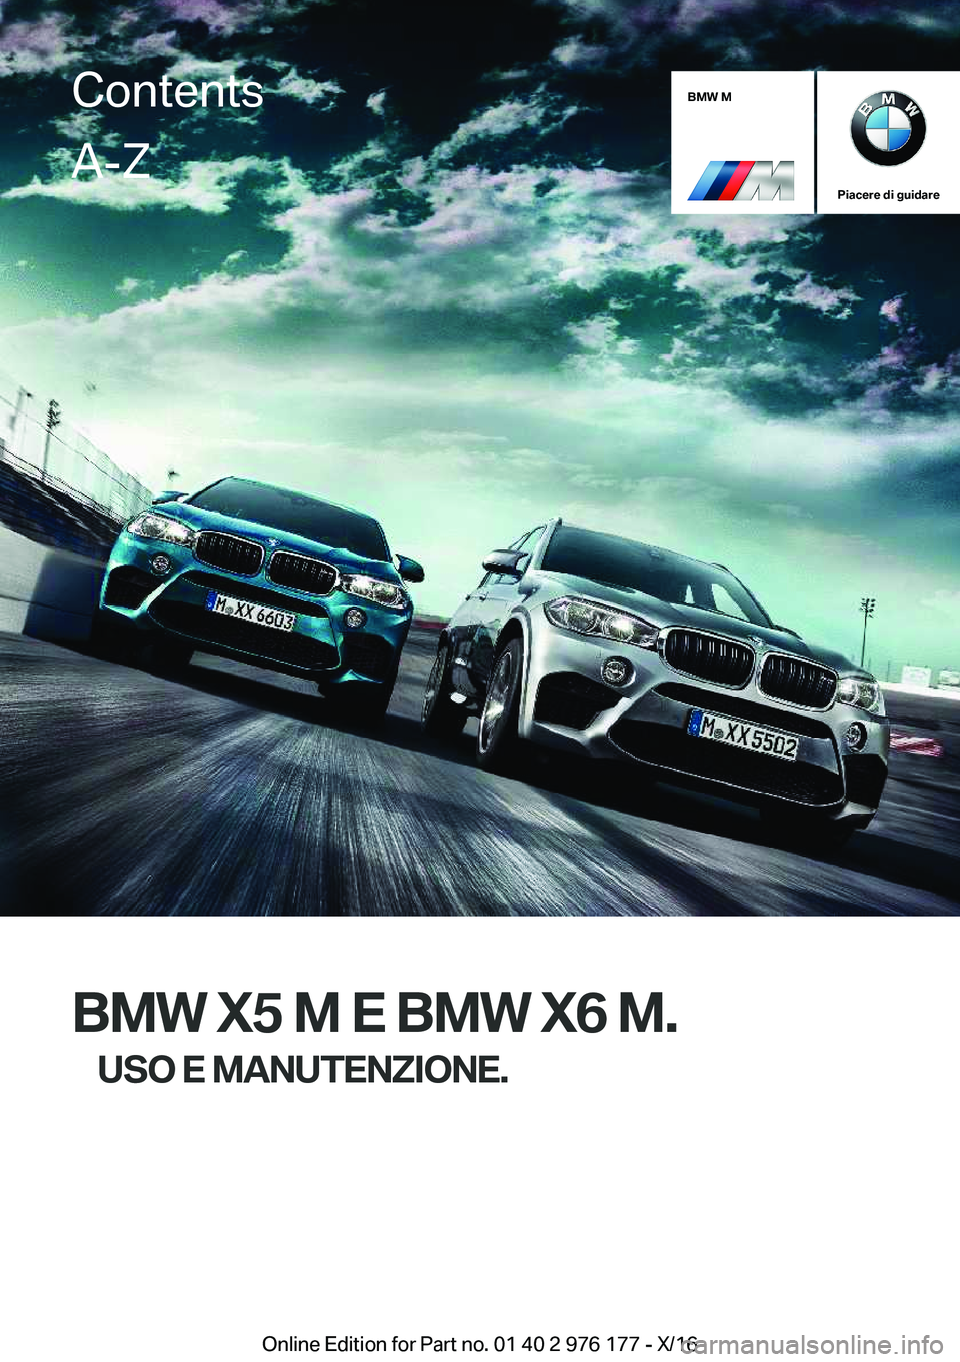 BMW X5 M 2017  Libretti Di Uso E manutenzione (in Italian) �B�M�W��M
�P�i�a�c�e�r�e��d�i��g�u�i�d�a�r�e
�B�M�W��X�5��M��E��B�M�W��X�6��M�.�U�S�O��E��M�A�N�U�T�E�N�Z�I�O�N�E�.
�C�o�n�t�e�n�t�s�A�-�Z
�O�n�l�i�n�e� �E�d�i�t�i�o�n� �f�o�r� �P�a�r�t� �n